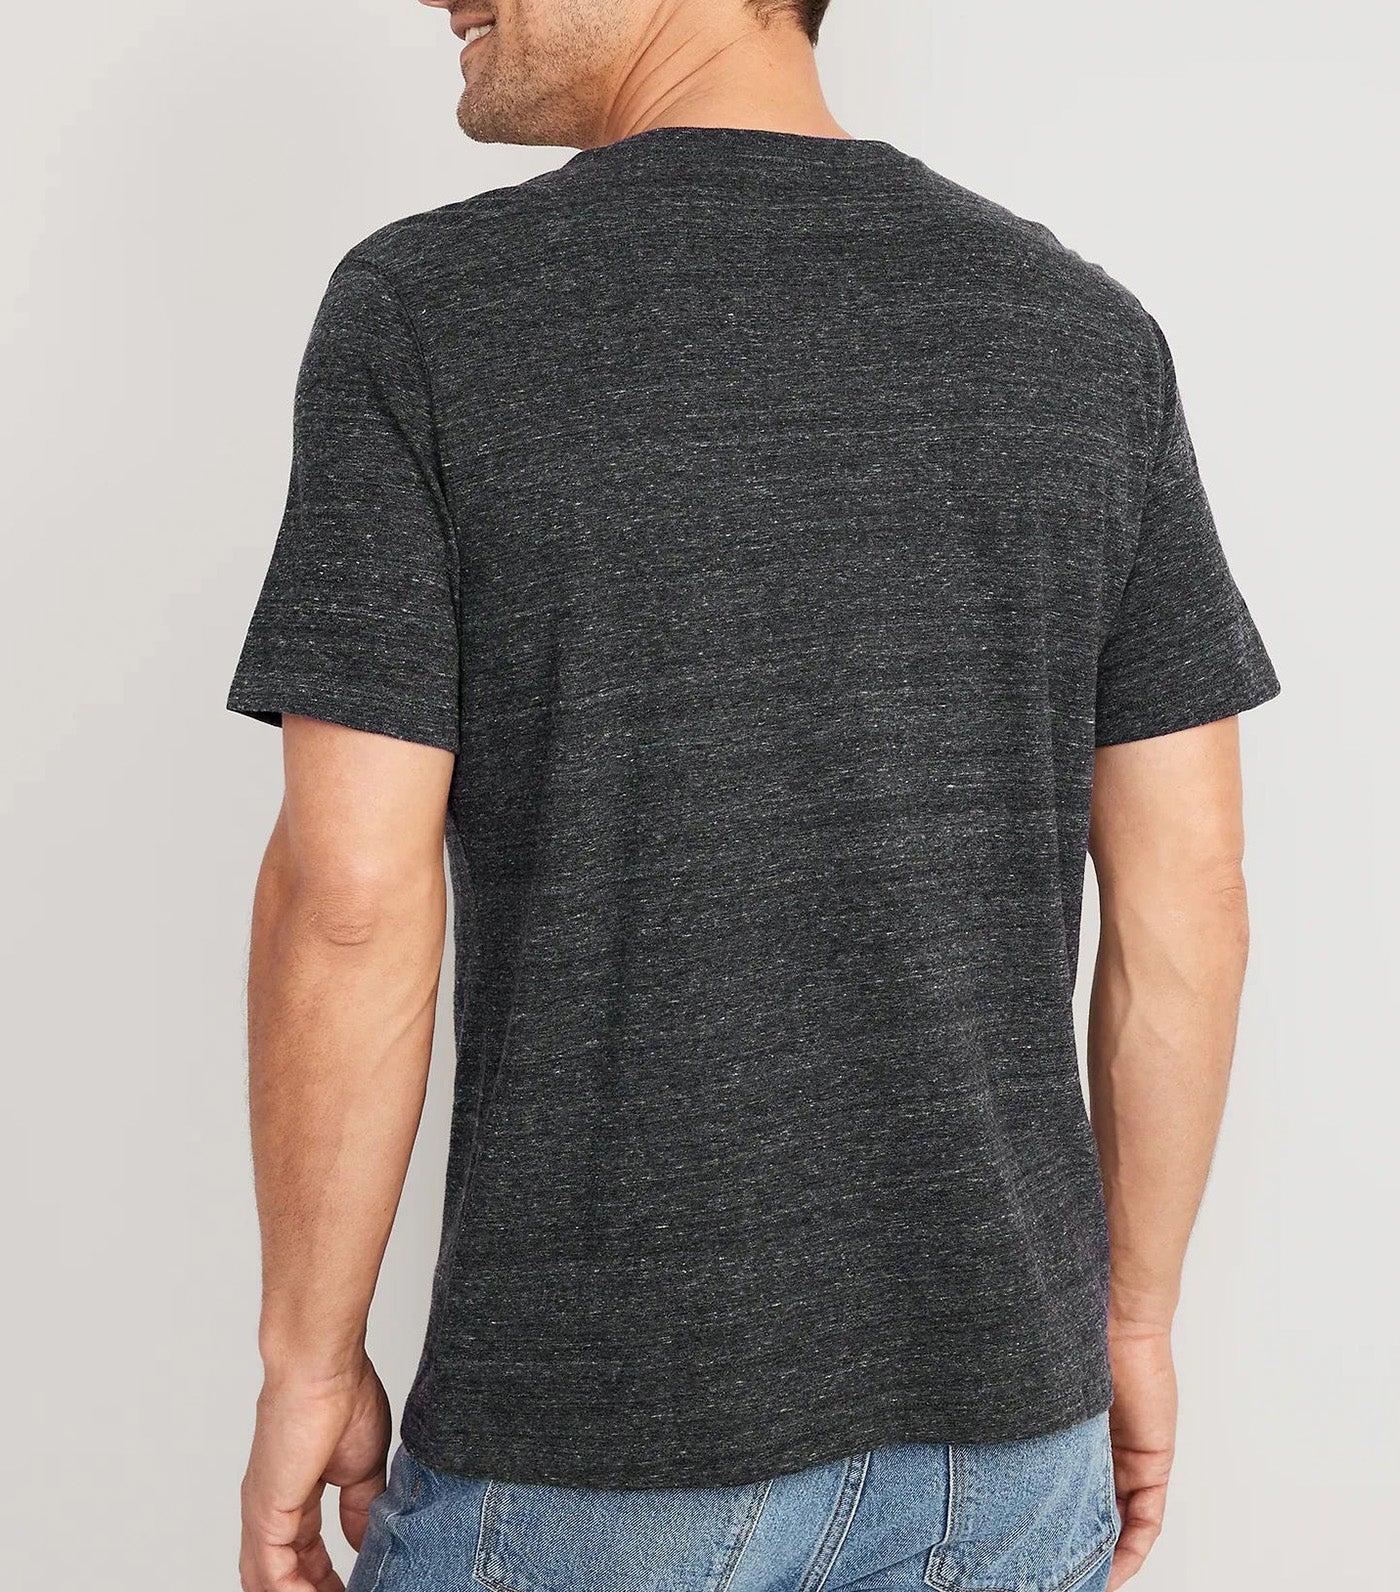 Soft-Washed V-Neck Slub-Knit T-Shirt for Men Charcoal Heather